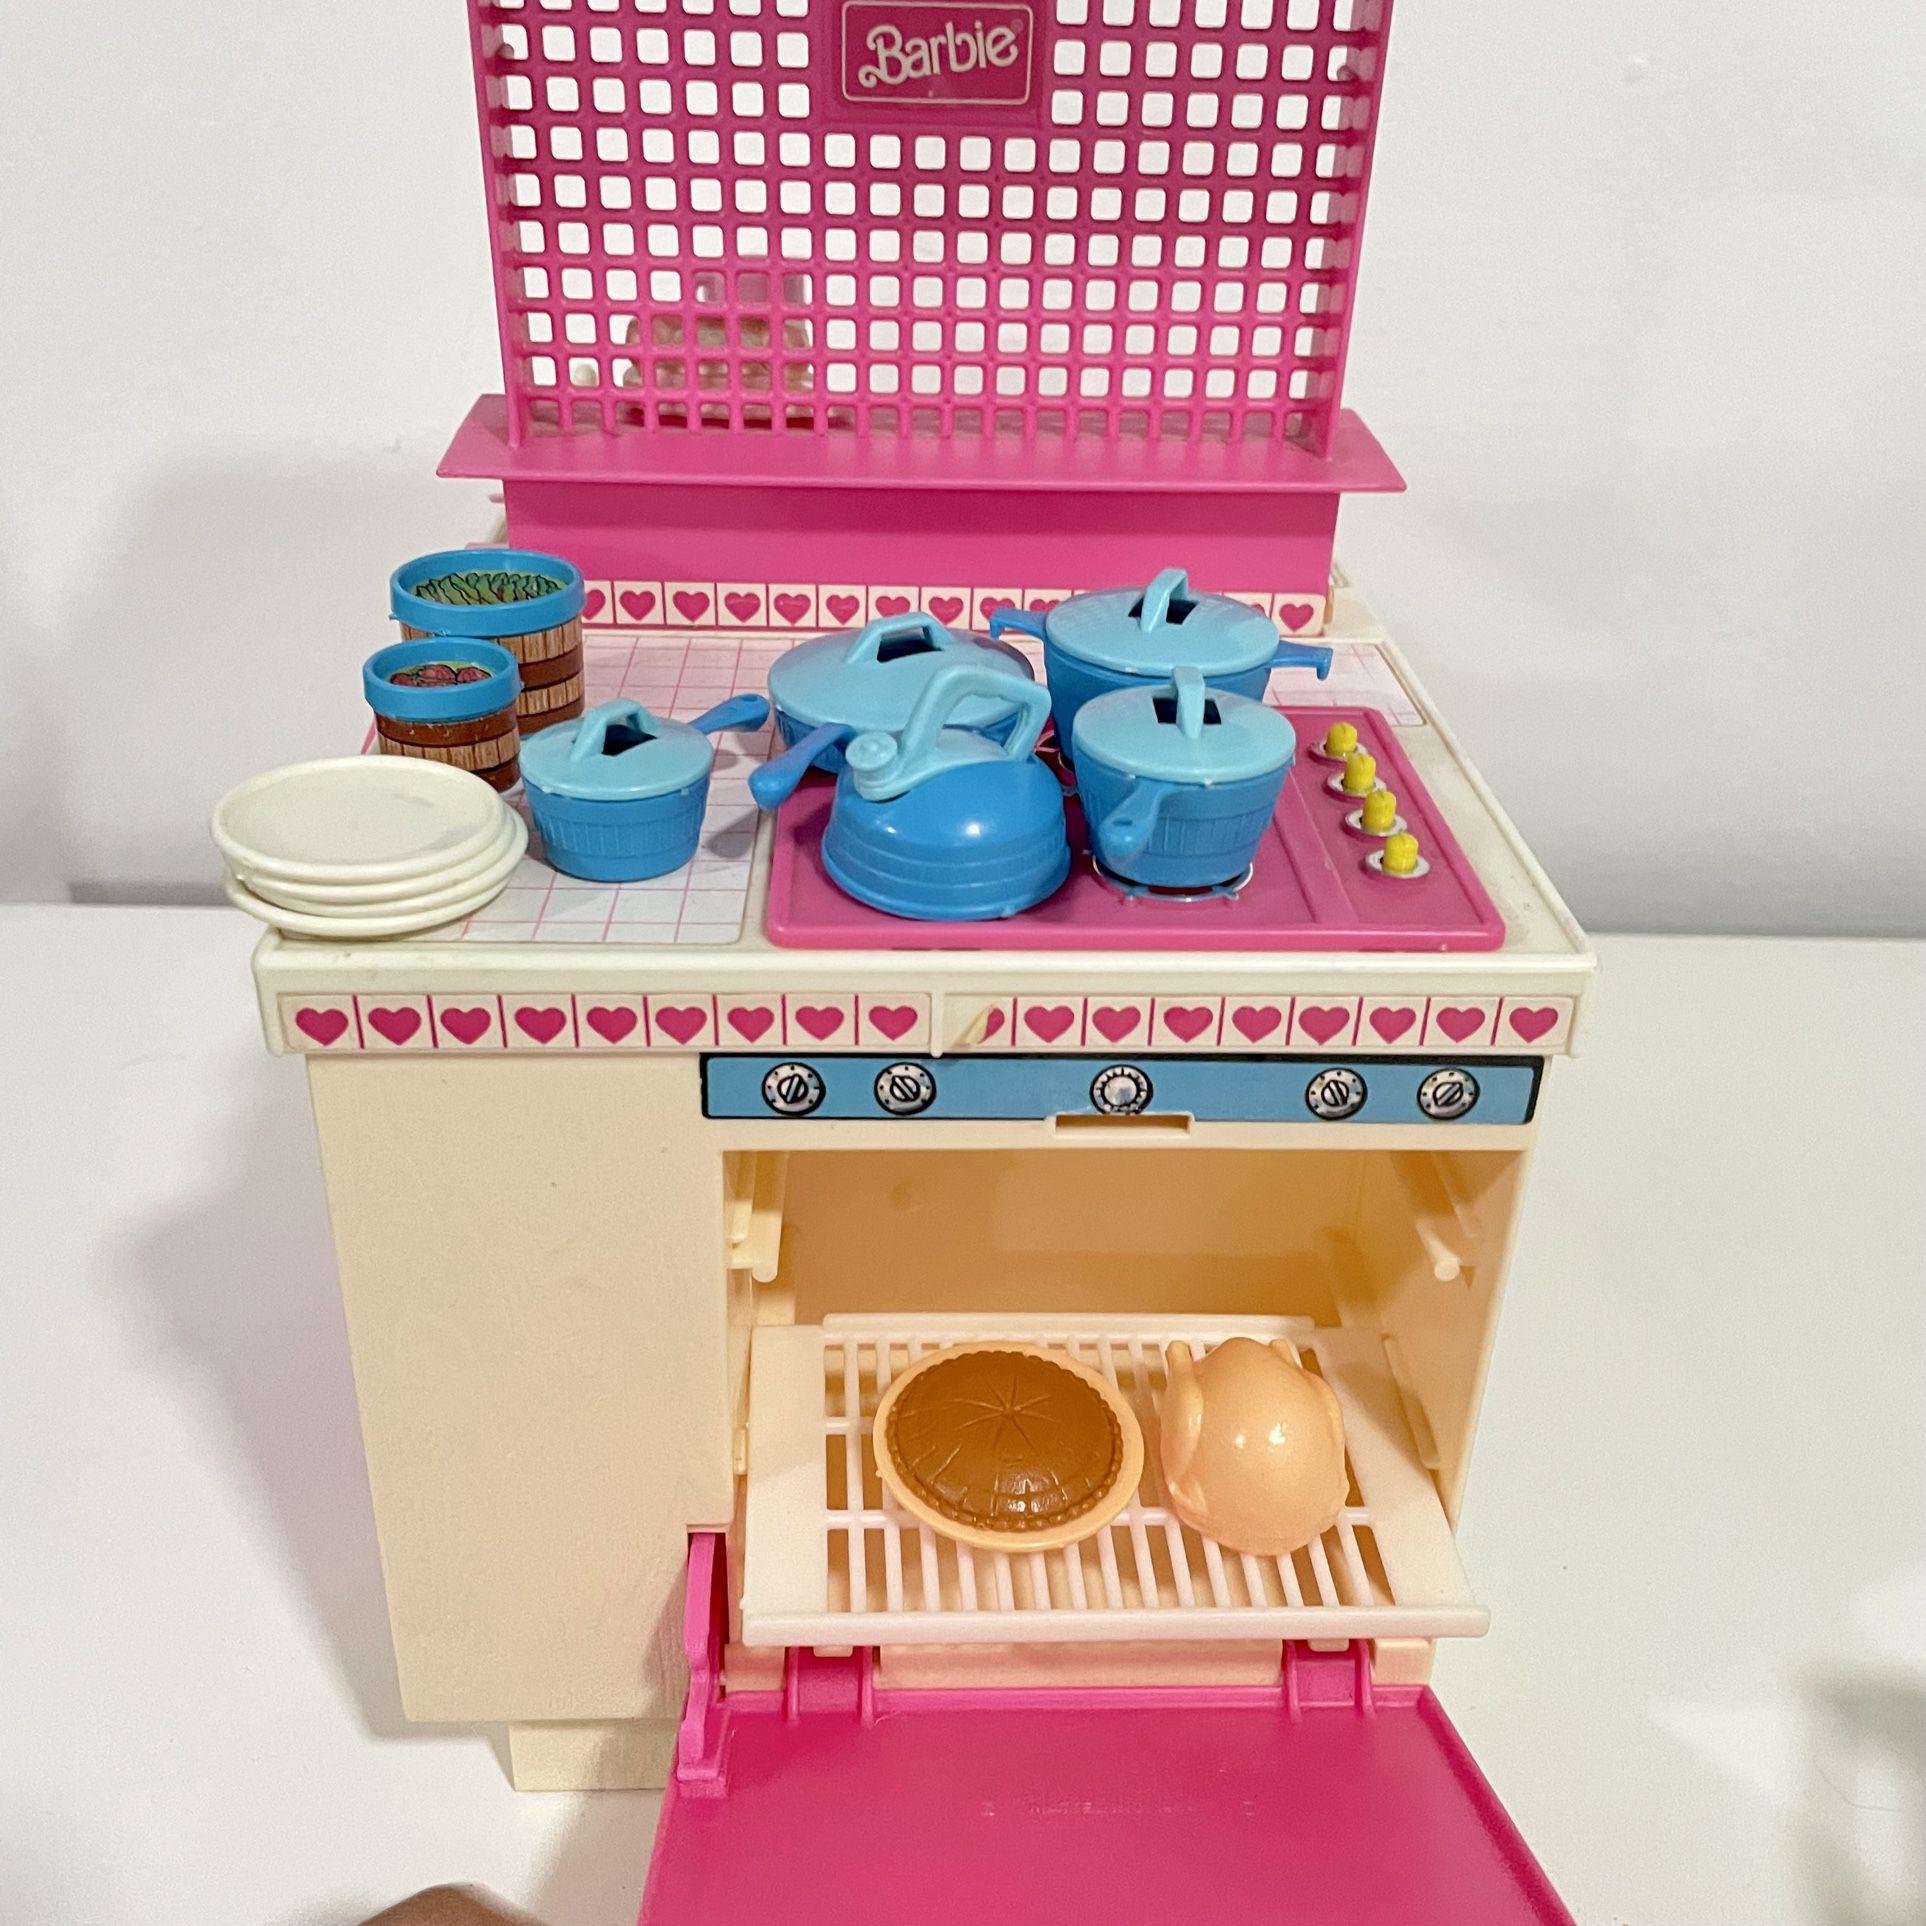 Barbie Vintage Dream Kitchen 1984 Teal Kitchen Accessories Teapot